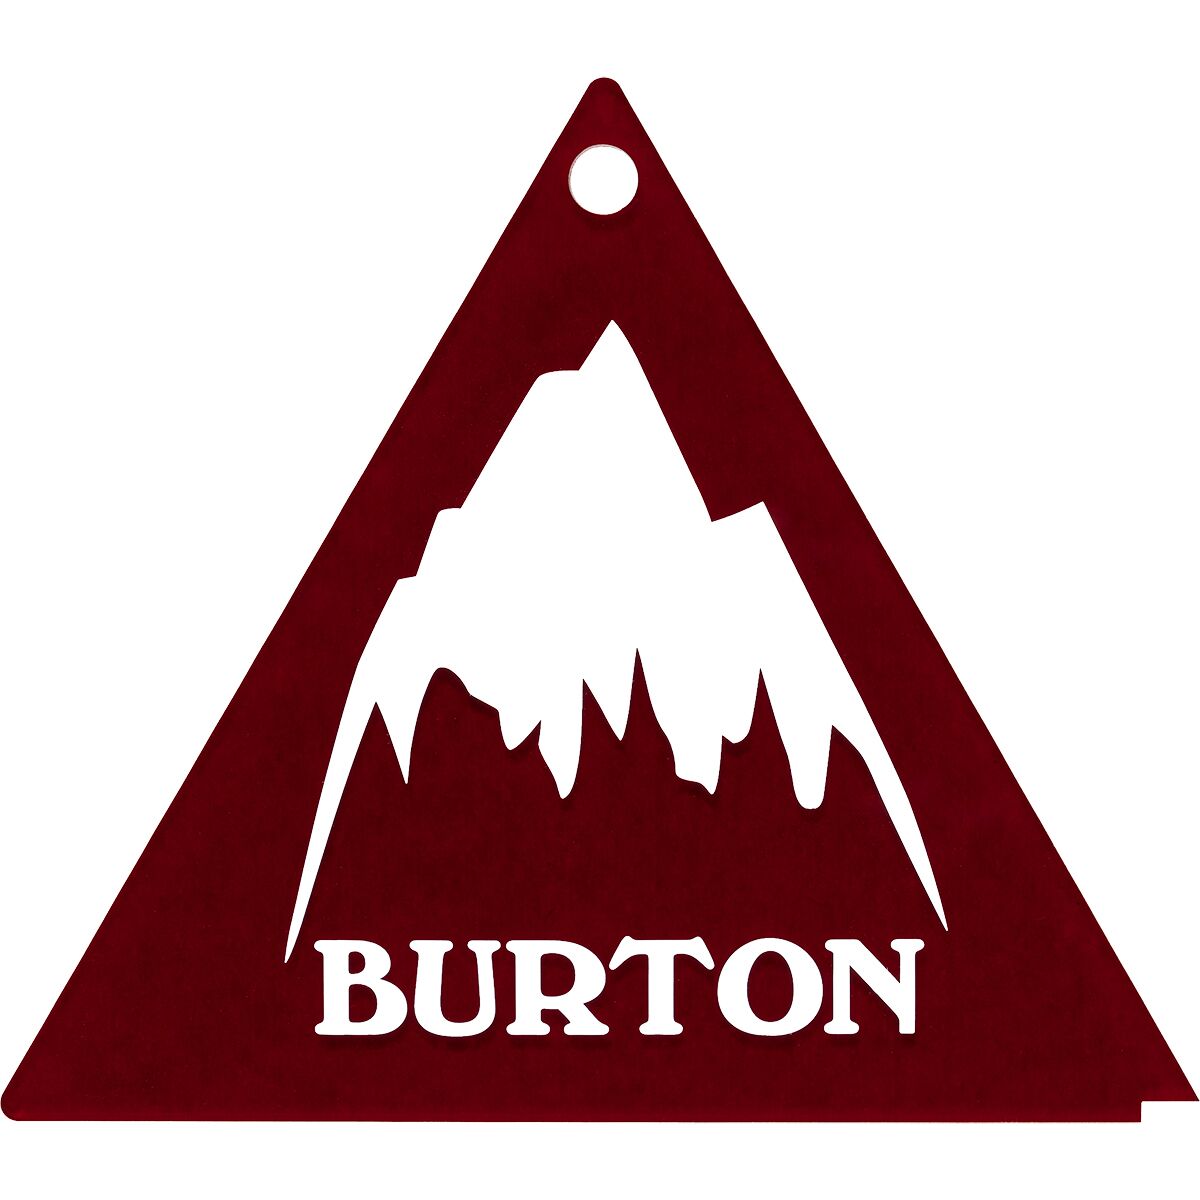 Burton Tri-Scraper - 12-Pack Assorted